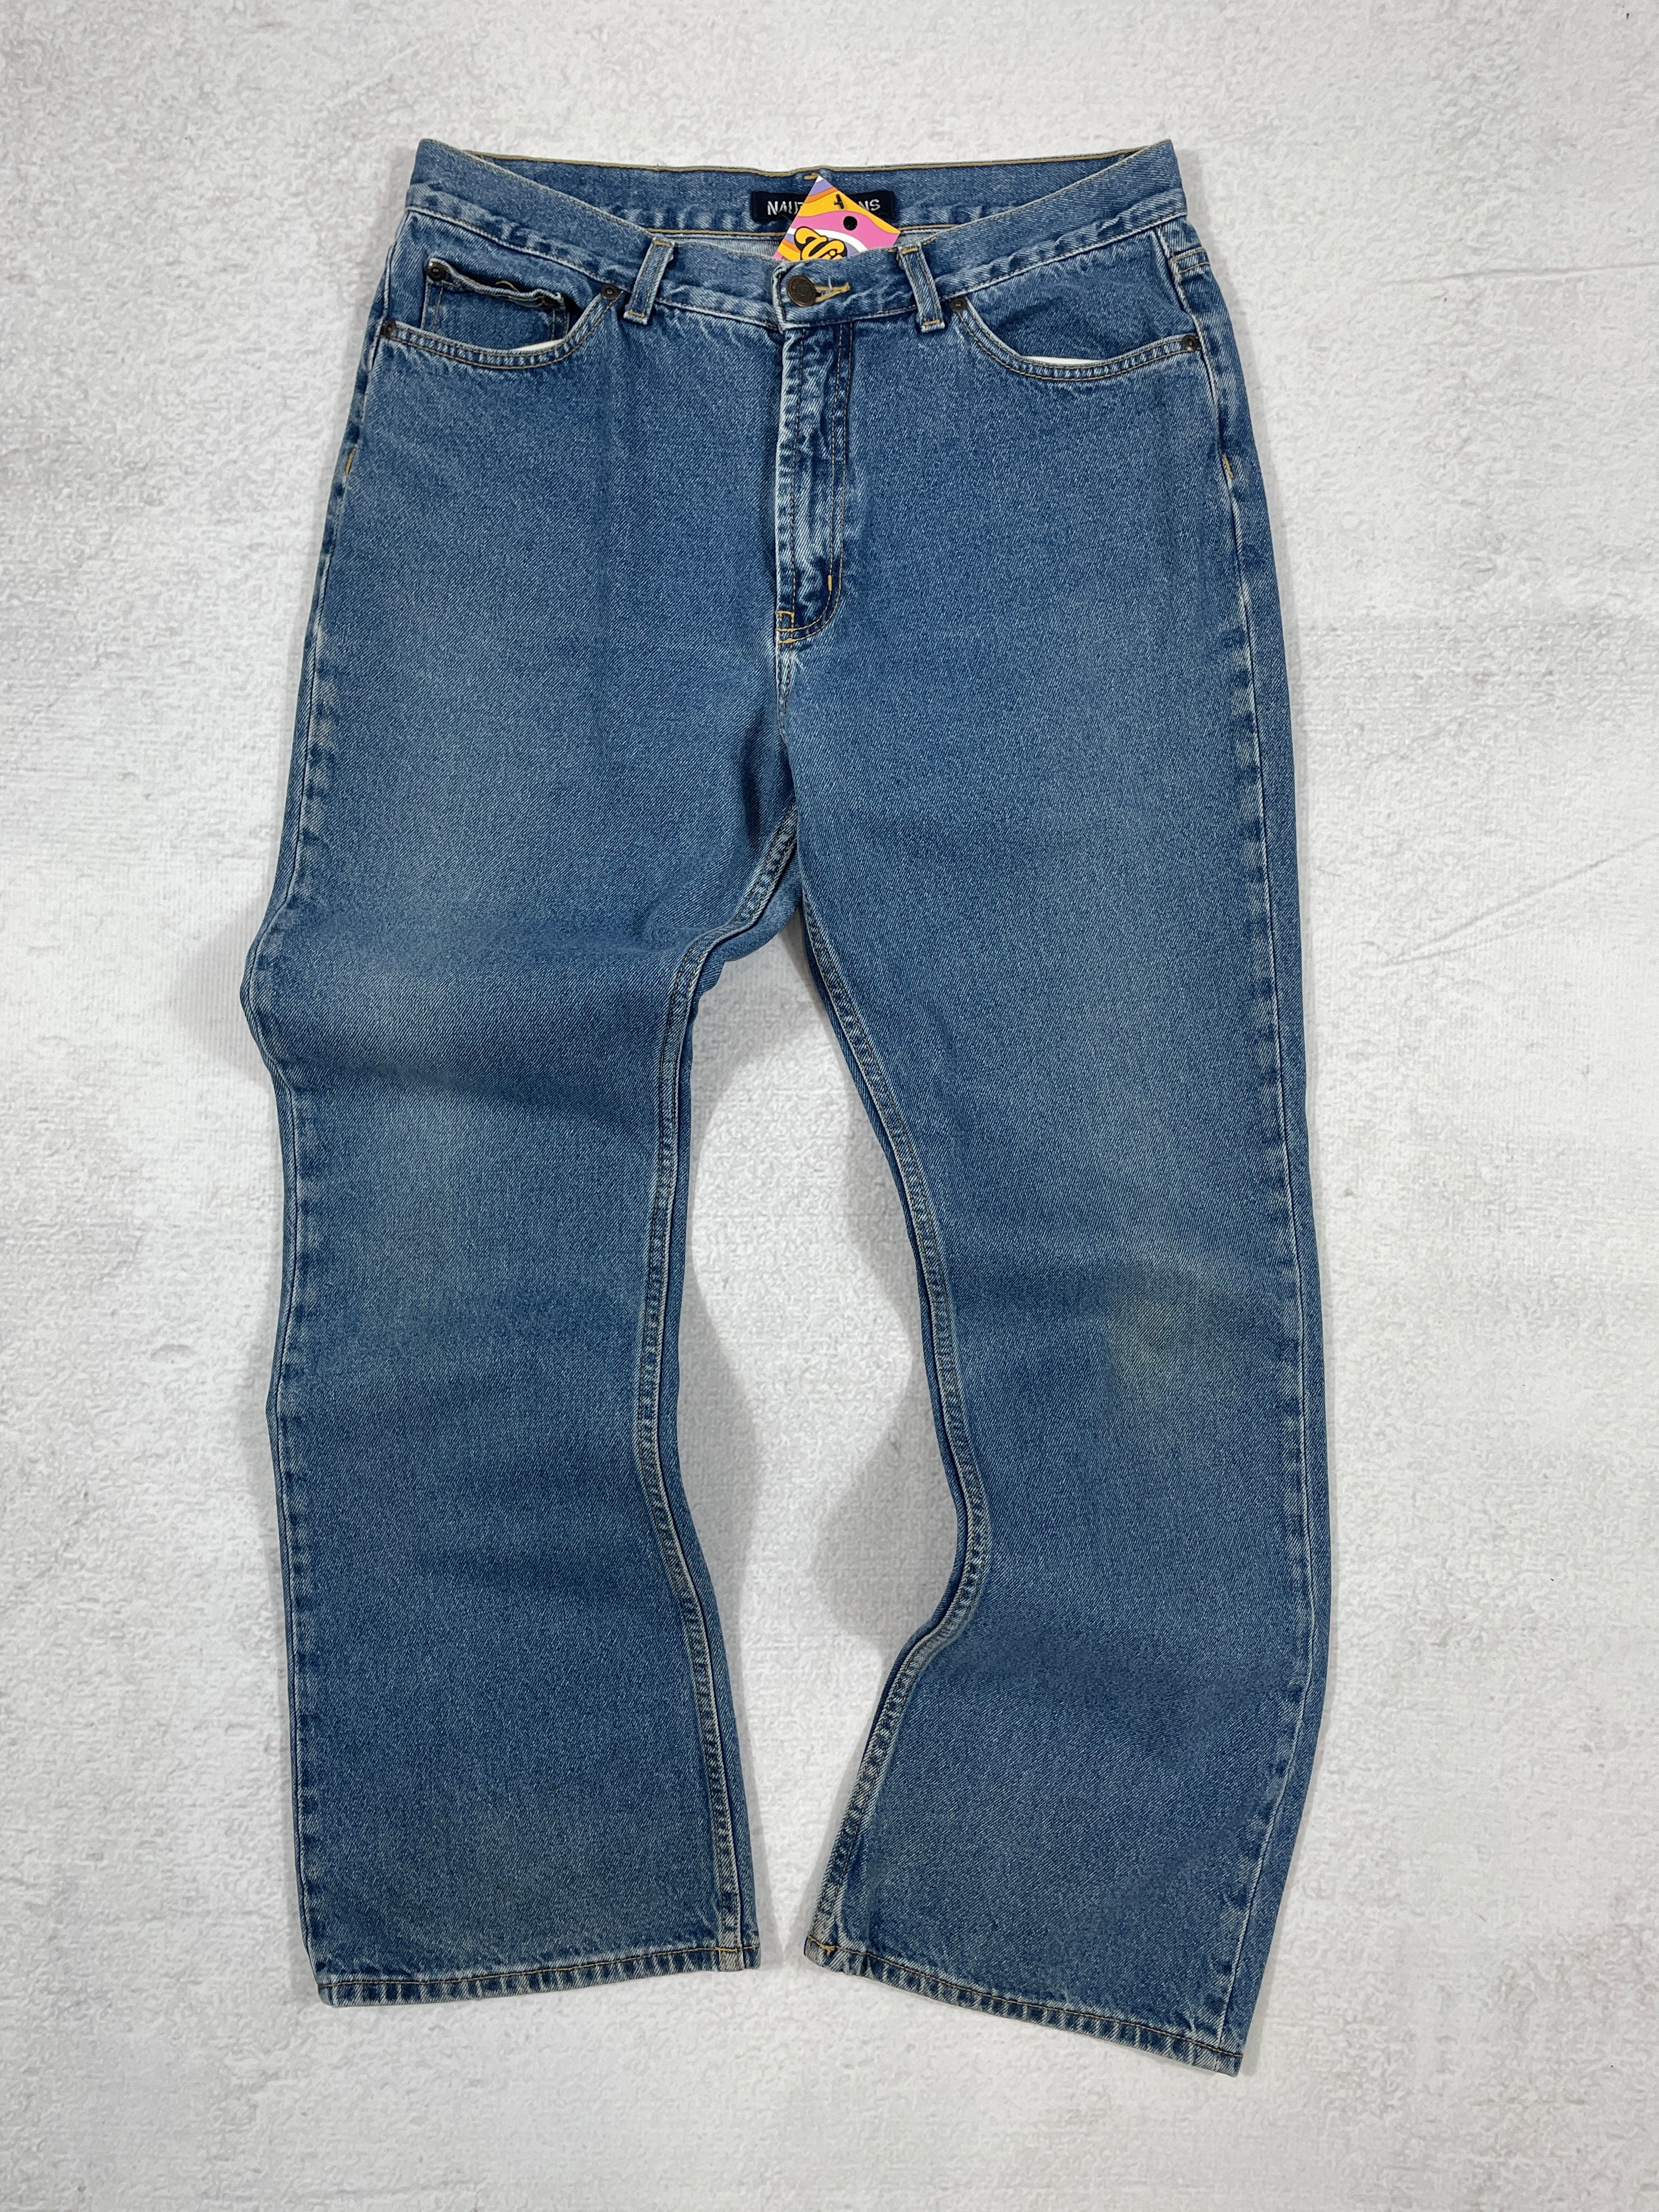 Vintage Nautica Jeans - Women's 32Wx32L